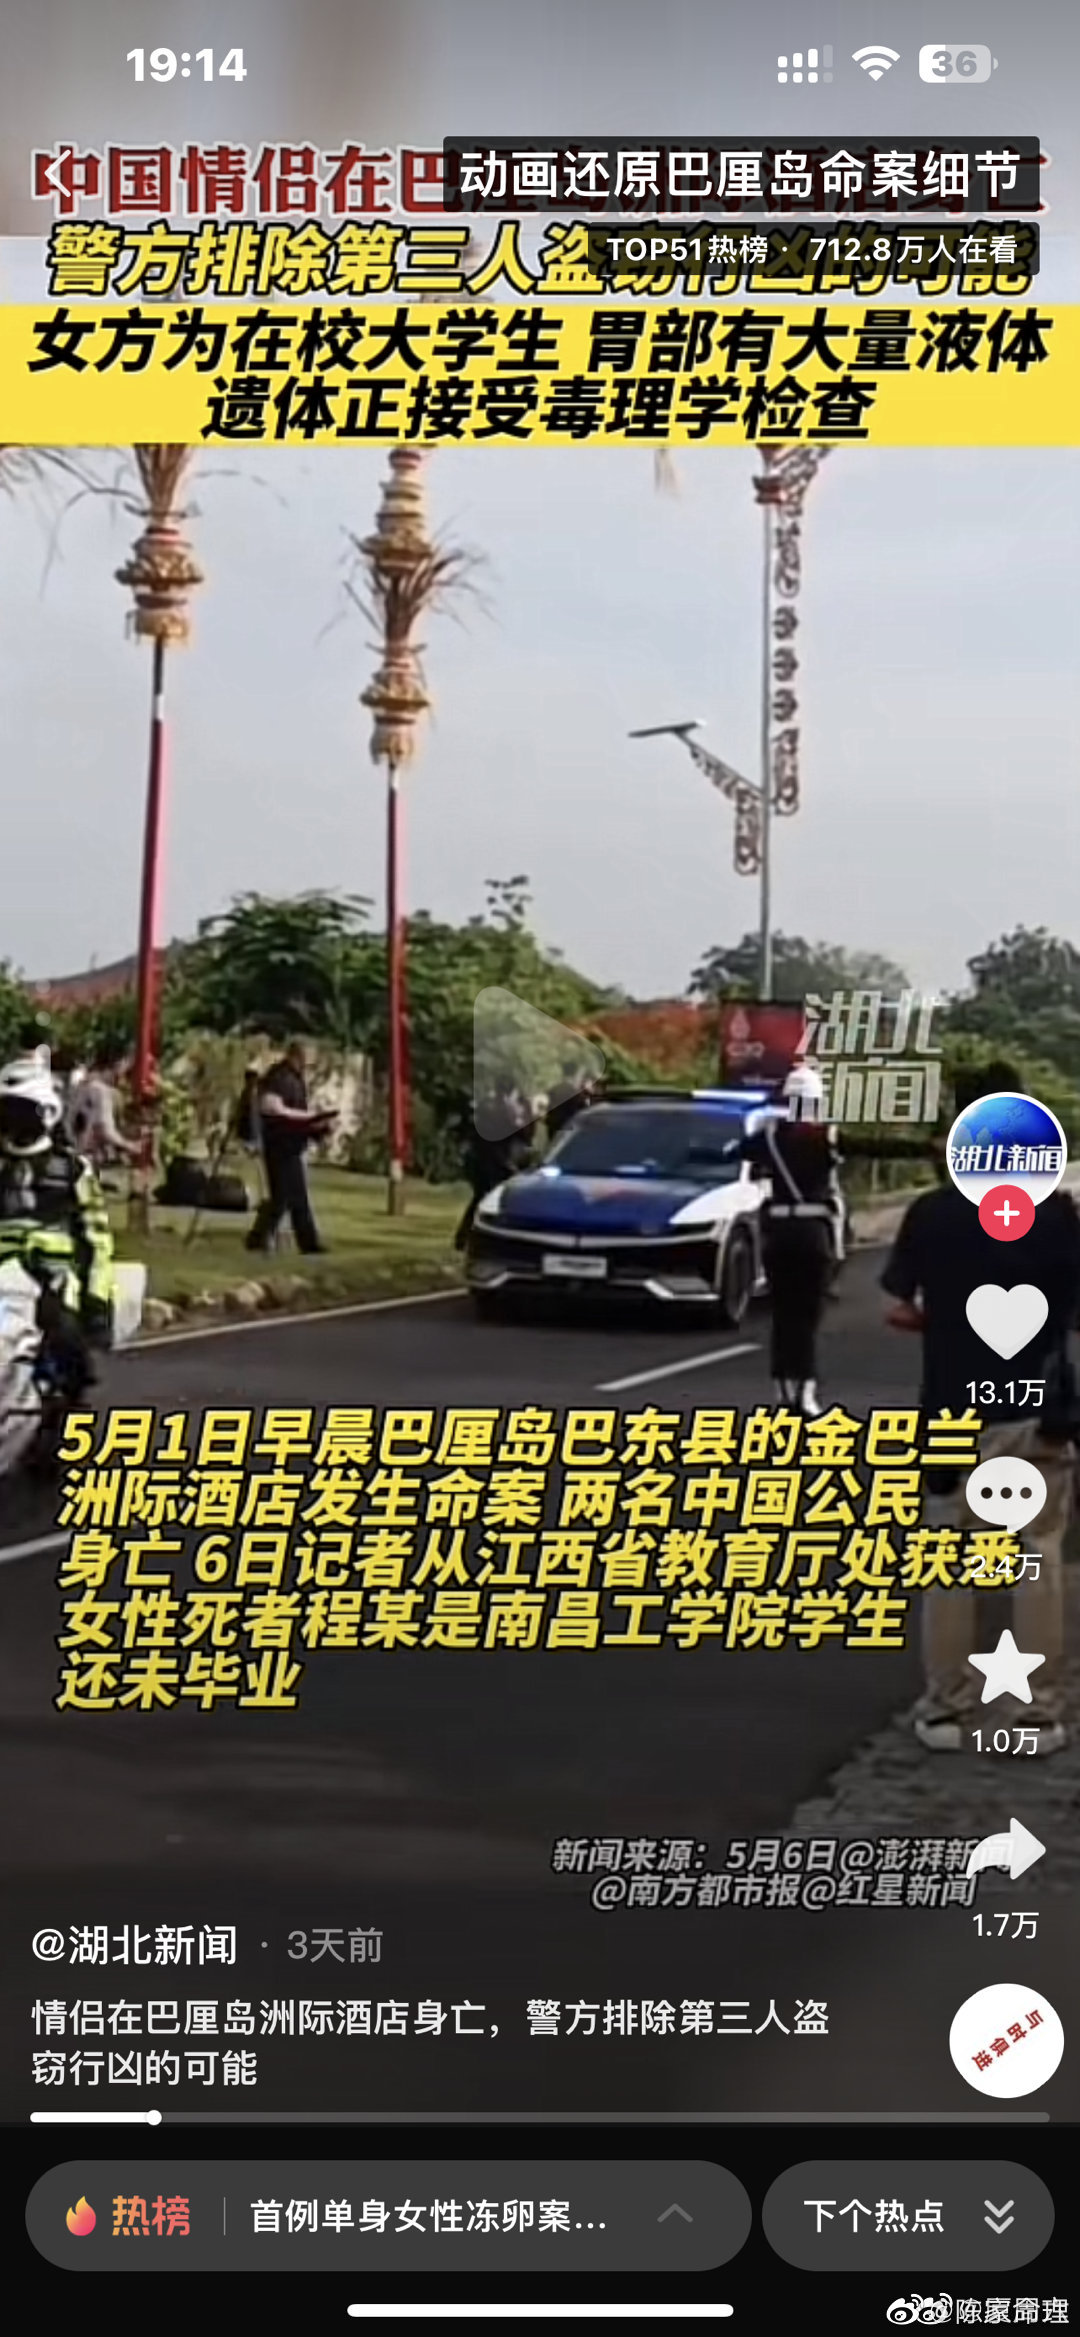 赤峰失踪女出租车司机确认被害！凶手被捕视频公布！